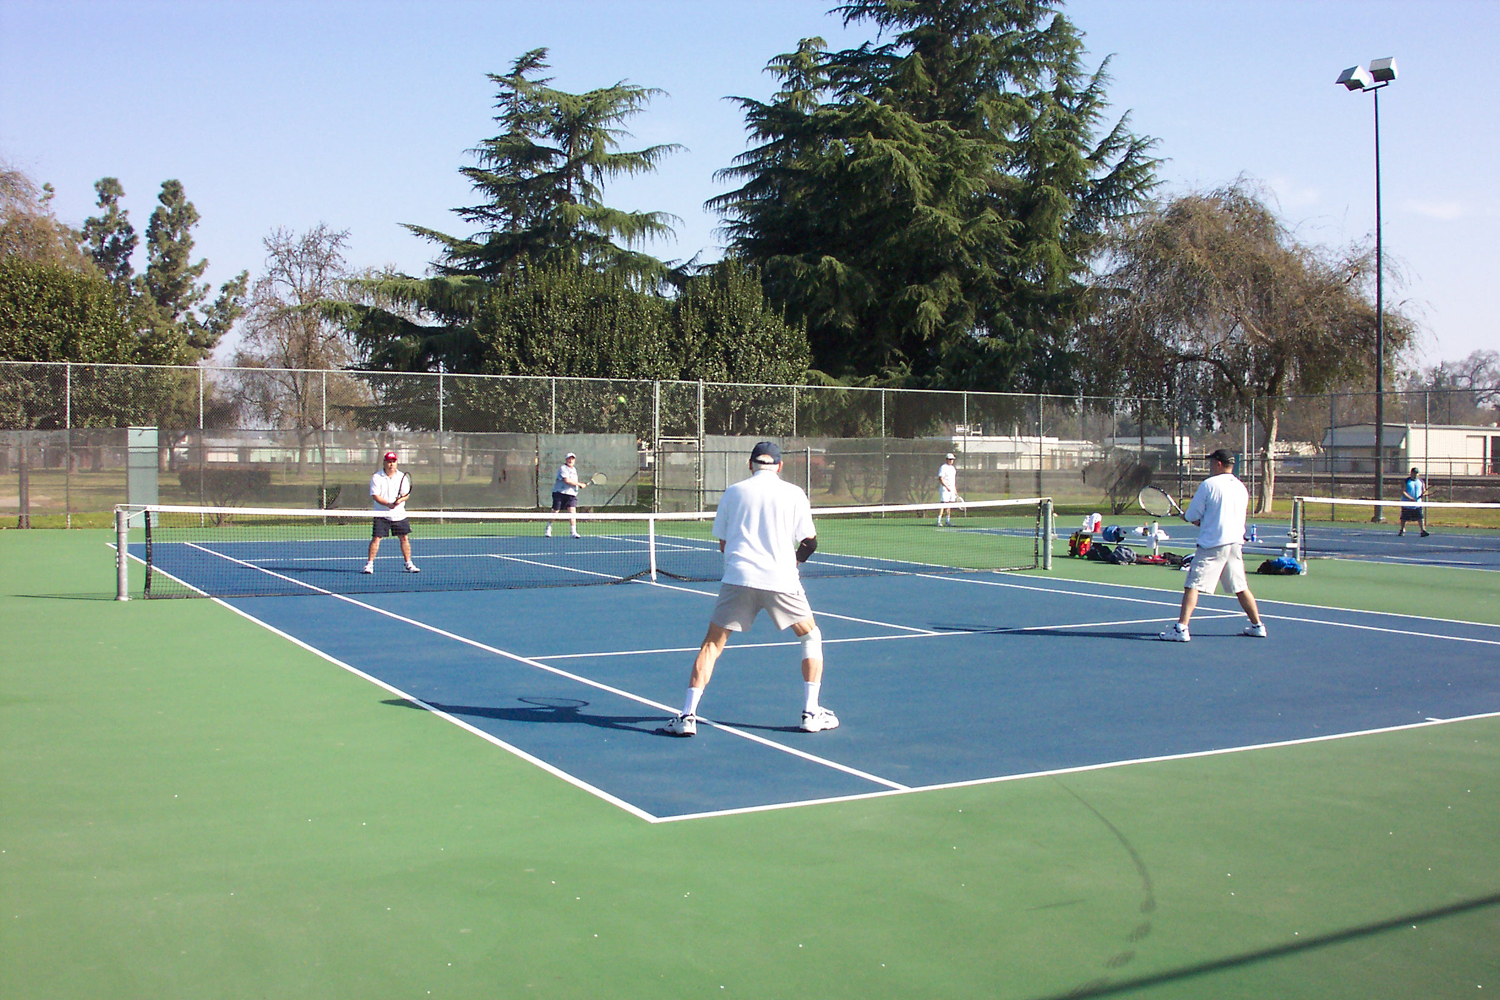 Tennis Courts at Centennial